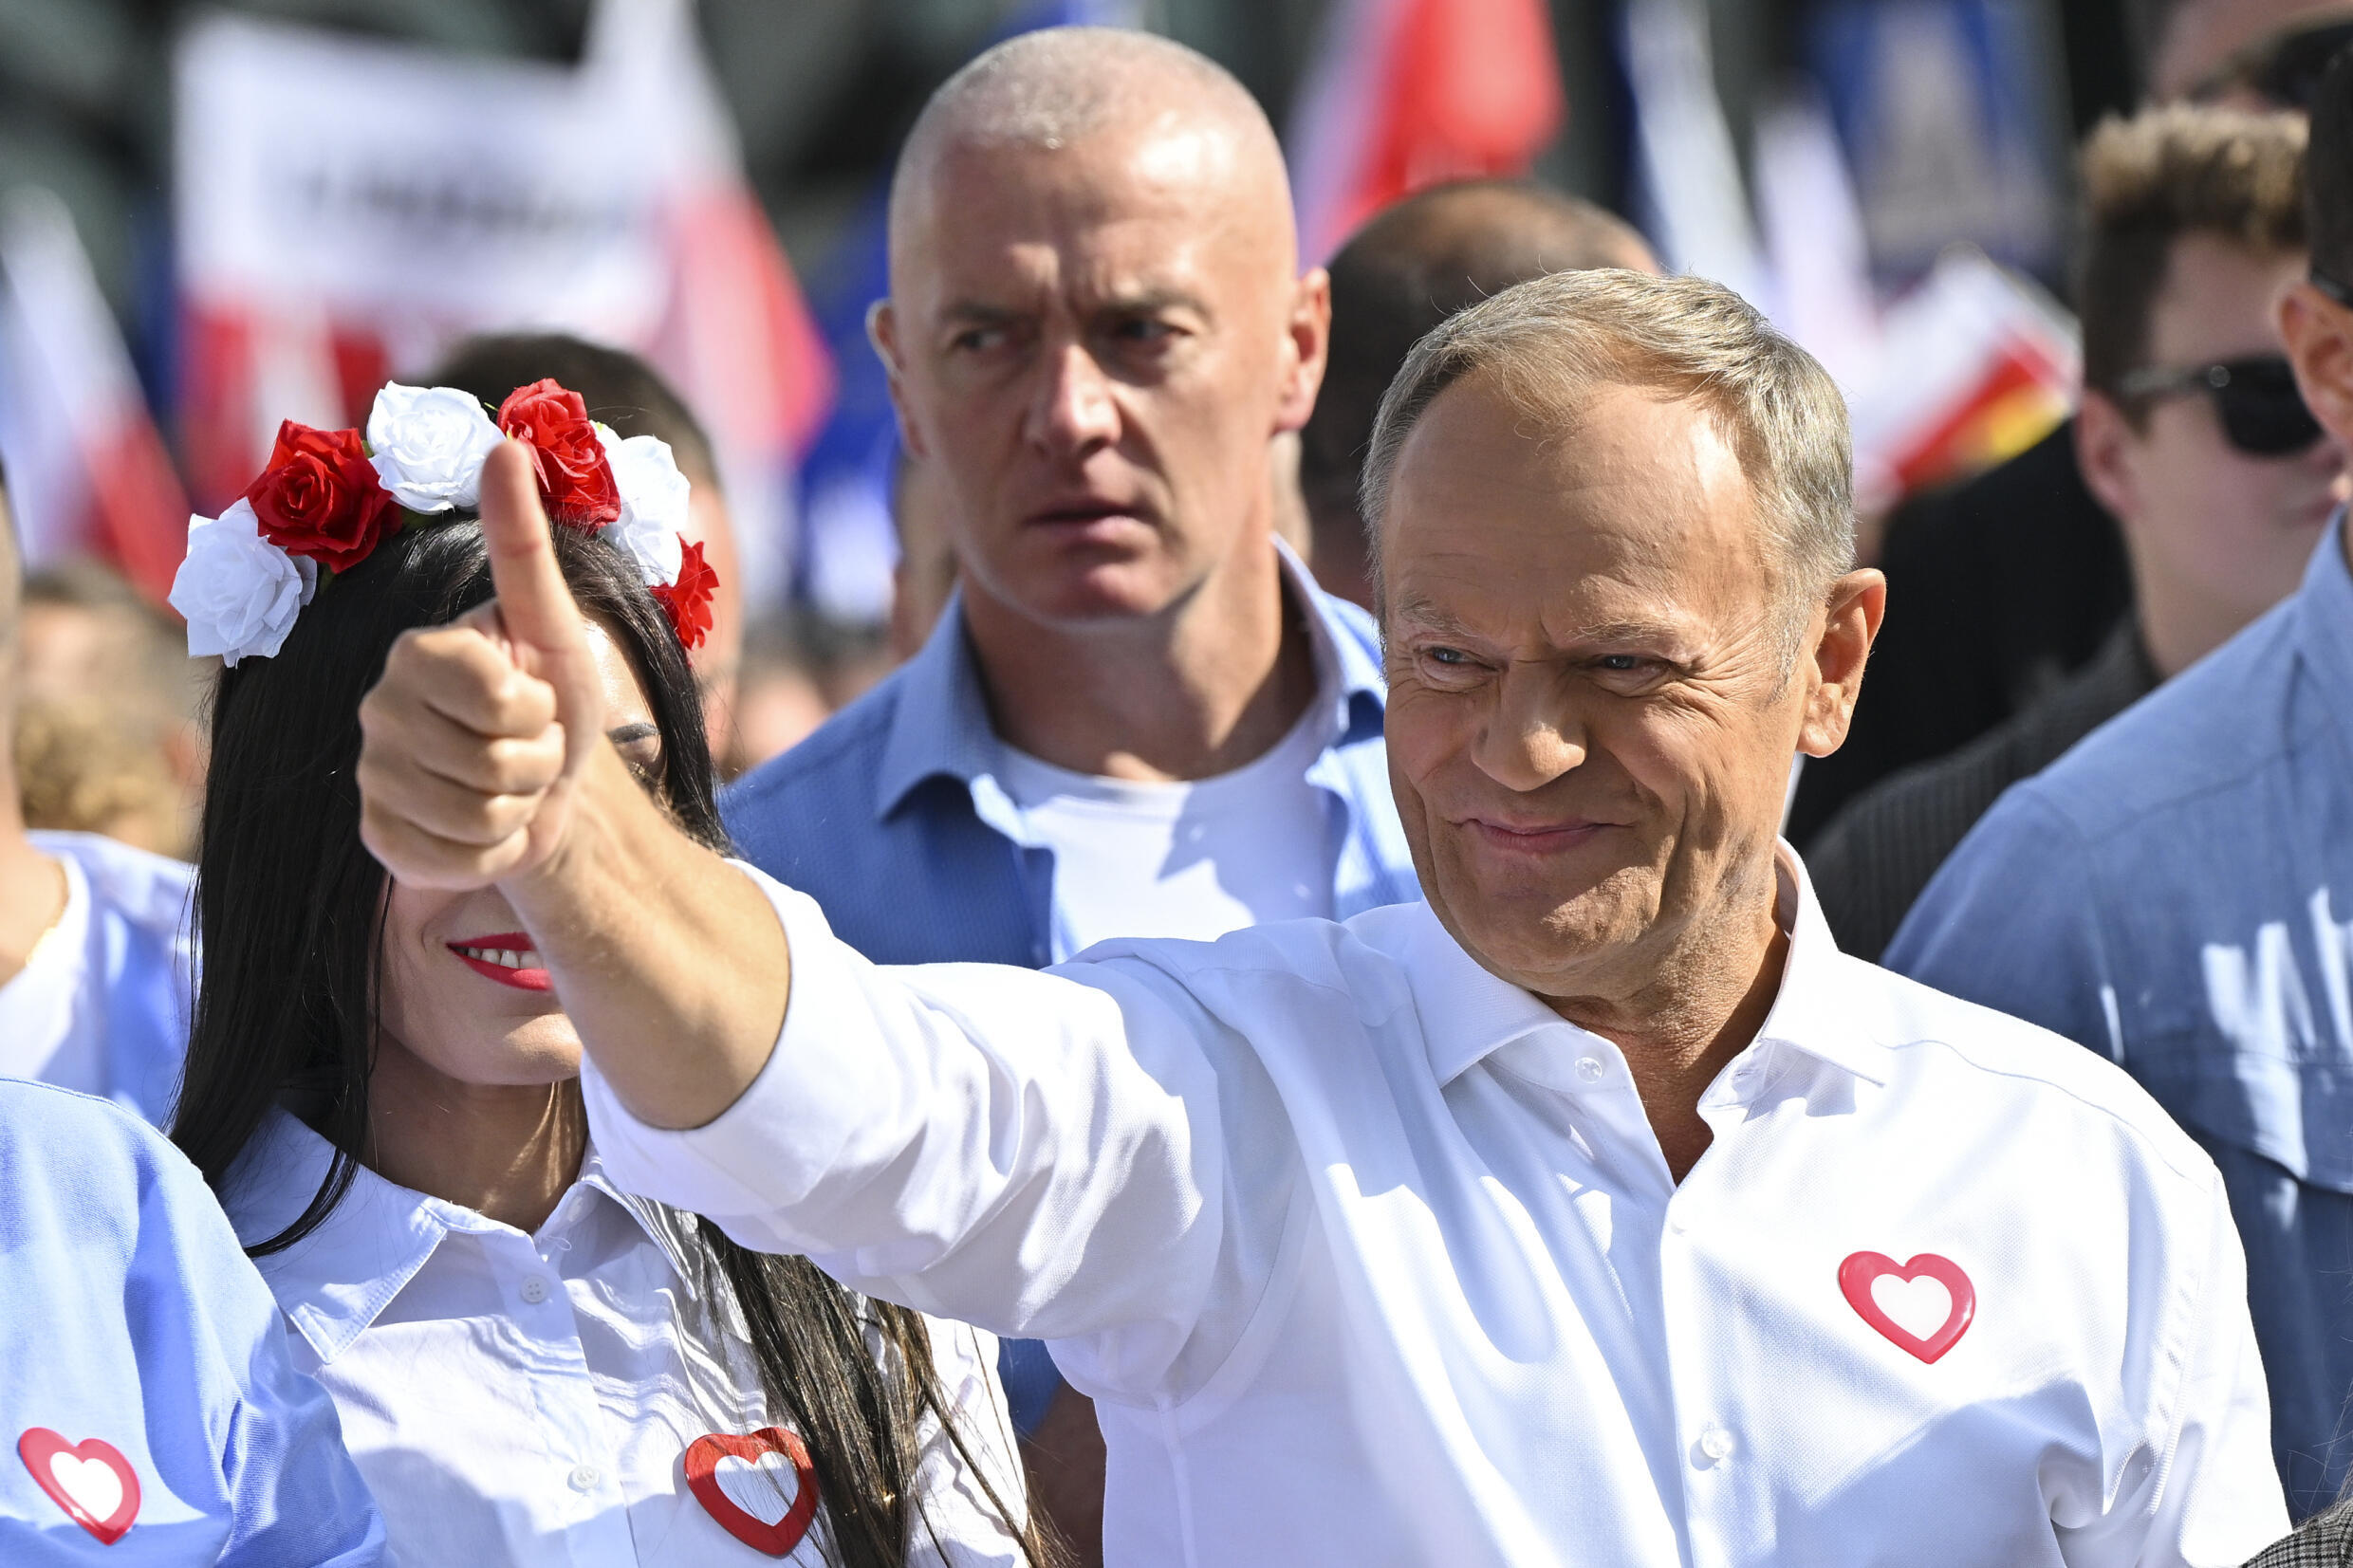 Donald Tusk, ancien Premier ministre et ex-président du Conseil européen, est devenu le chef du bloc centriste Plateforme civique (PO) lors de la marche anti-gouvernementale dans le centre de Varsovie, le 1ᵉʳ octobre 2023.